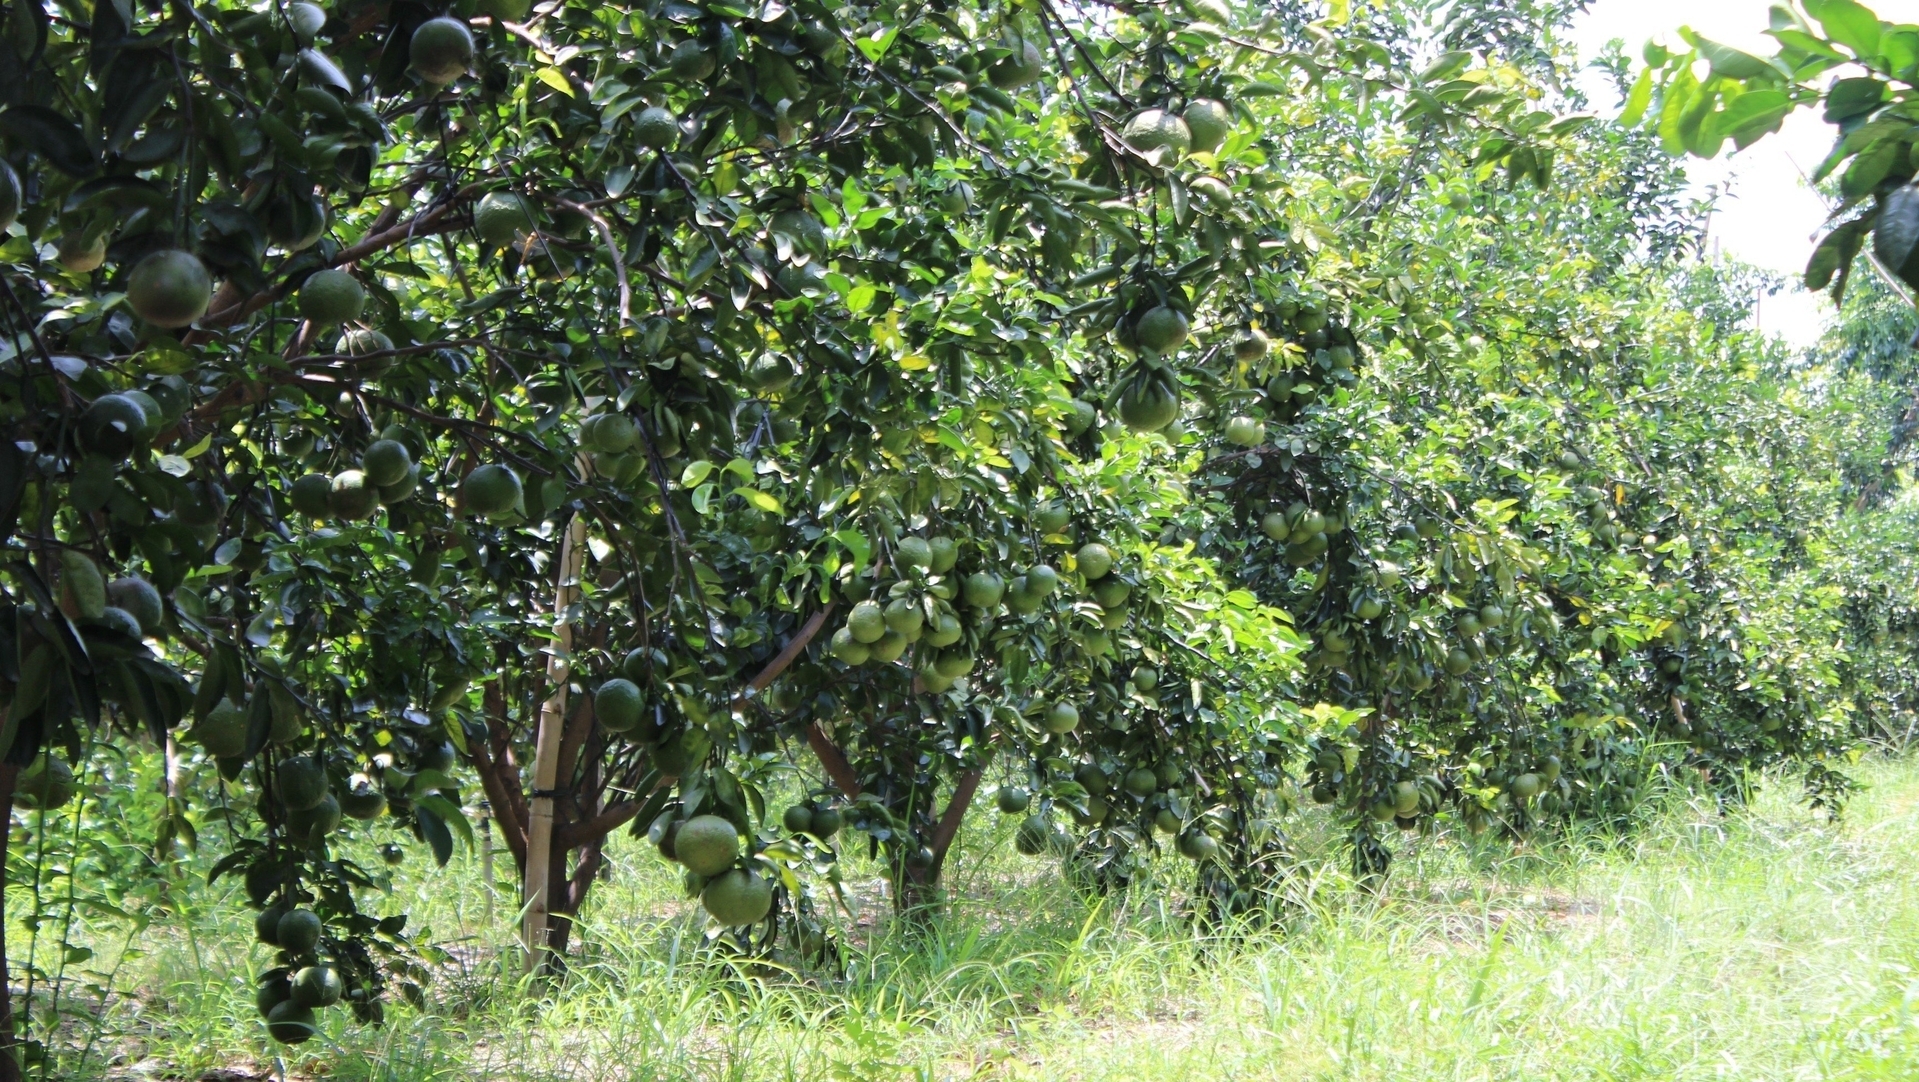 Một trong những vườn cây ăn quả được tưới mát bởi những công trình thủy lợi. Ảnh: Trần Trung.